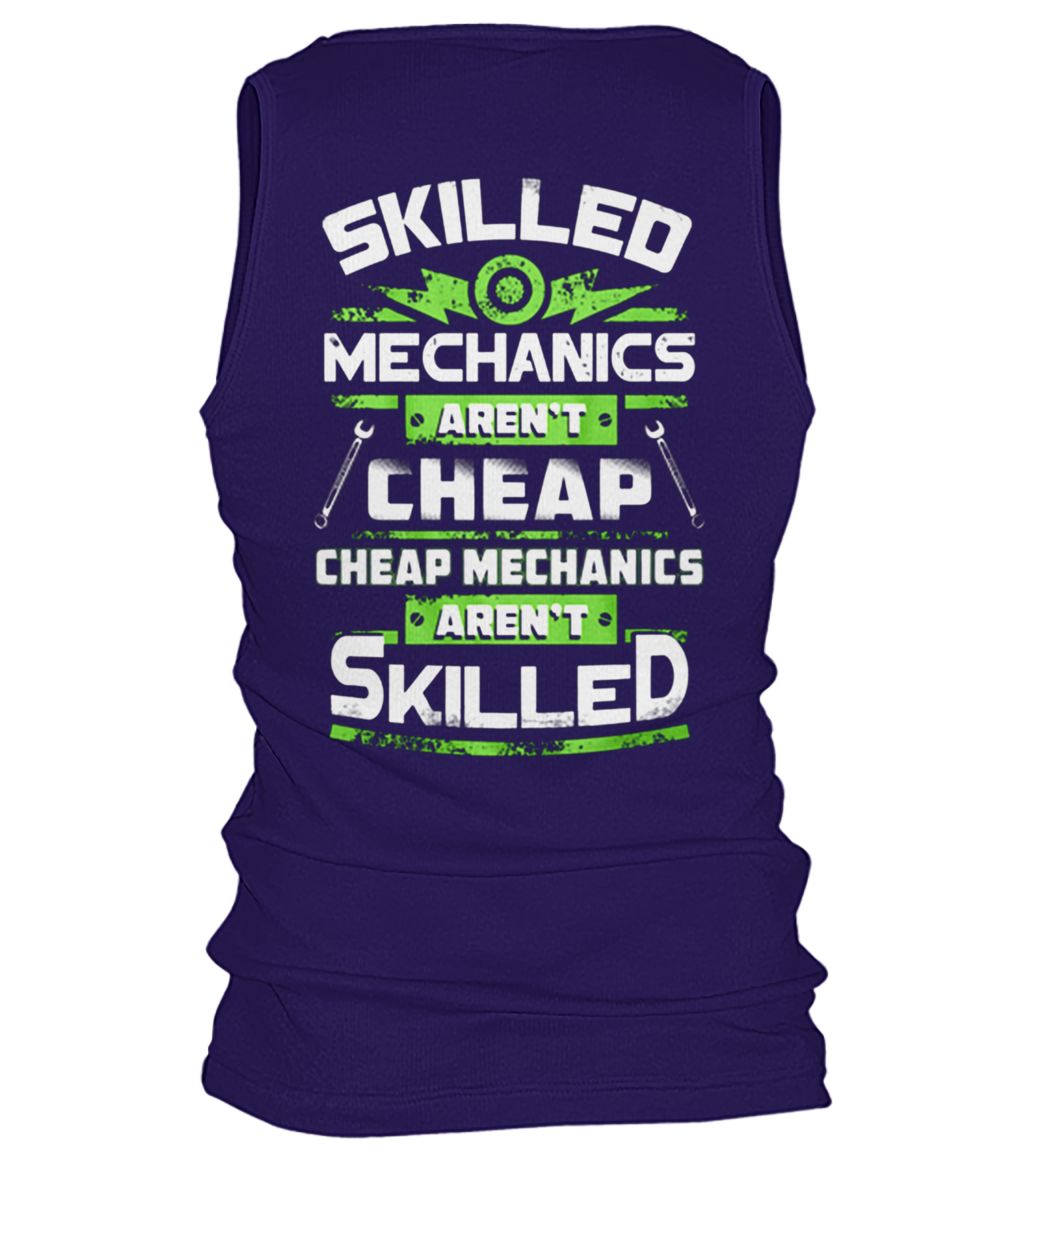 Skilled mechanics aren't cheap cheap mechanics aren't skilled men's tank top